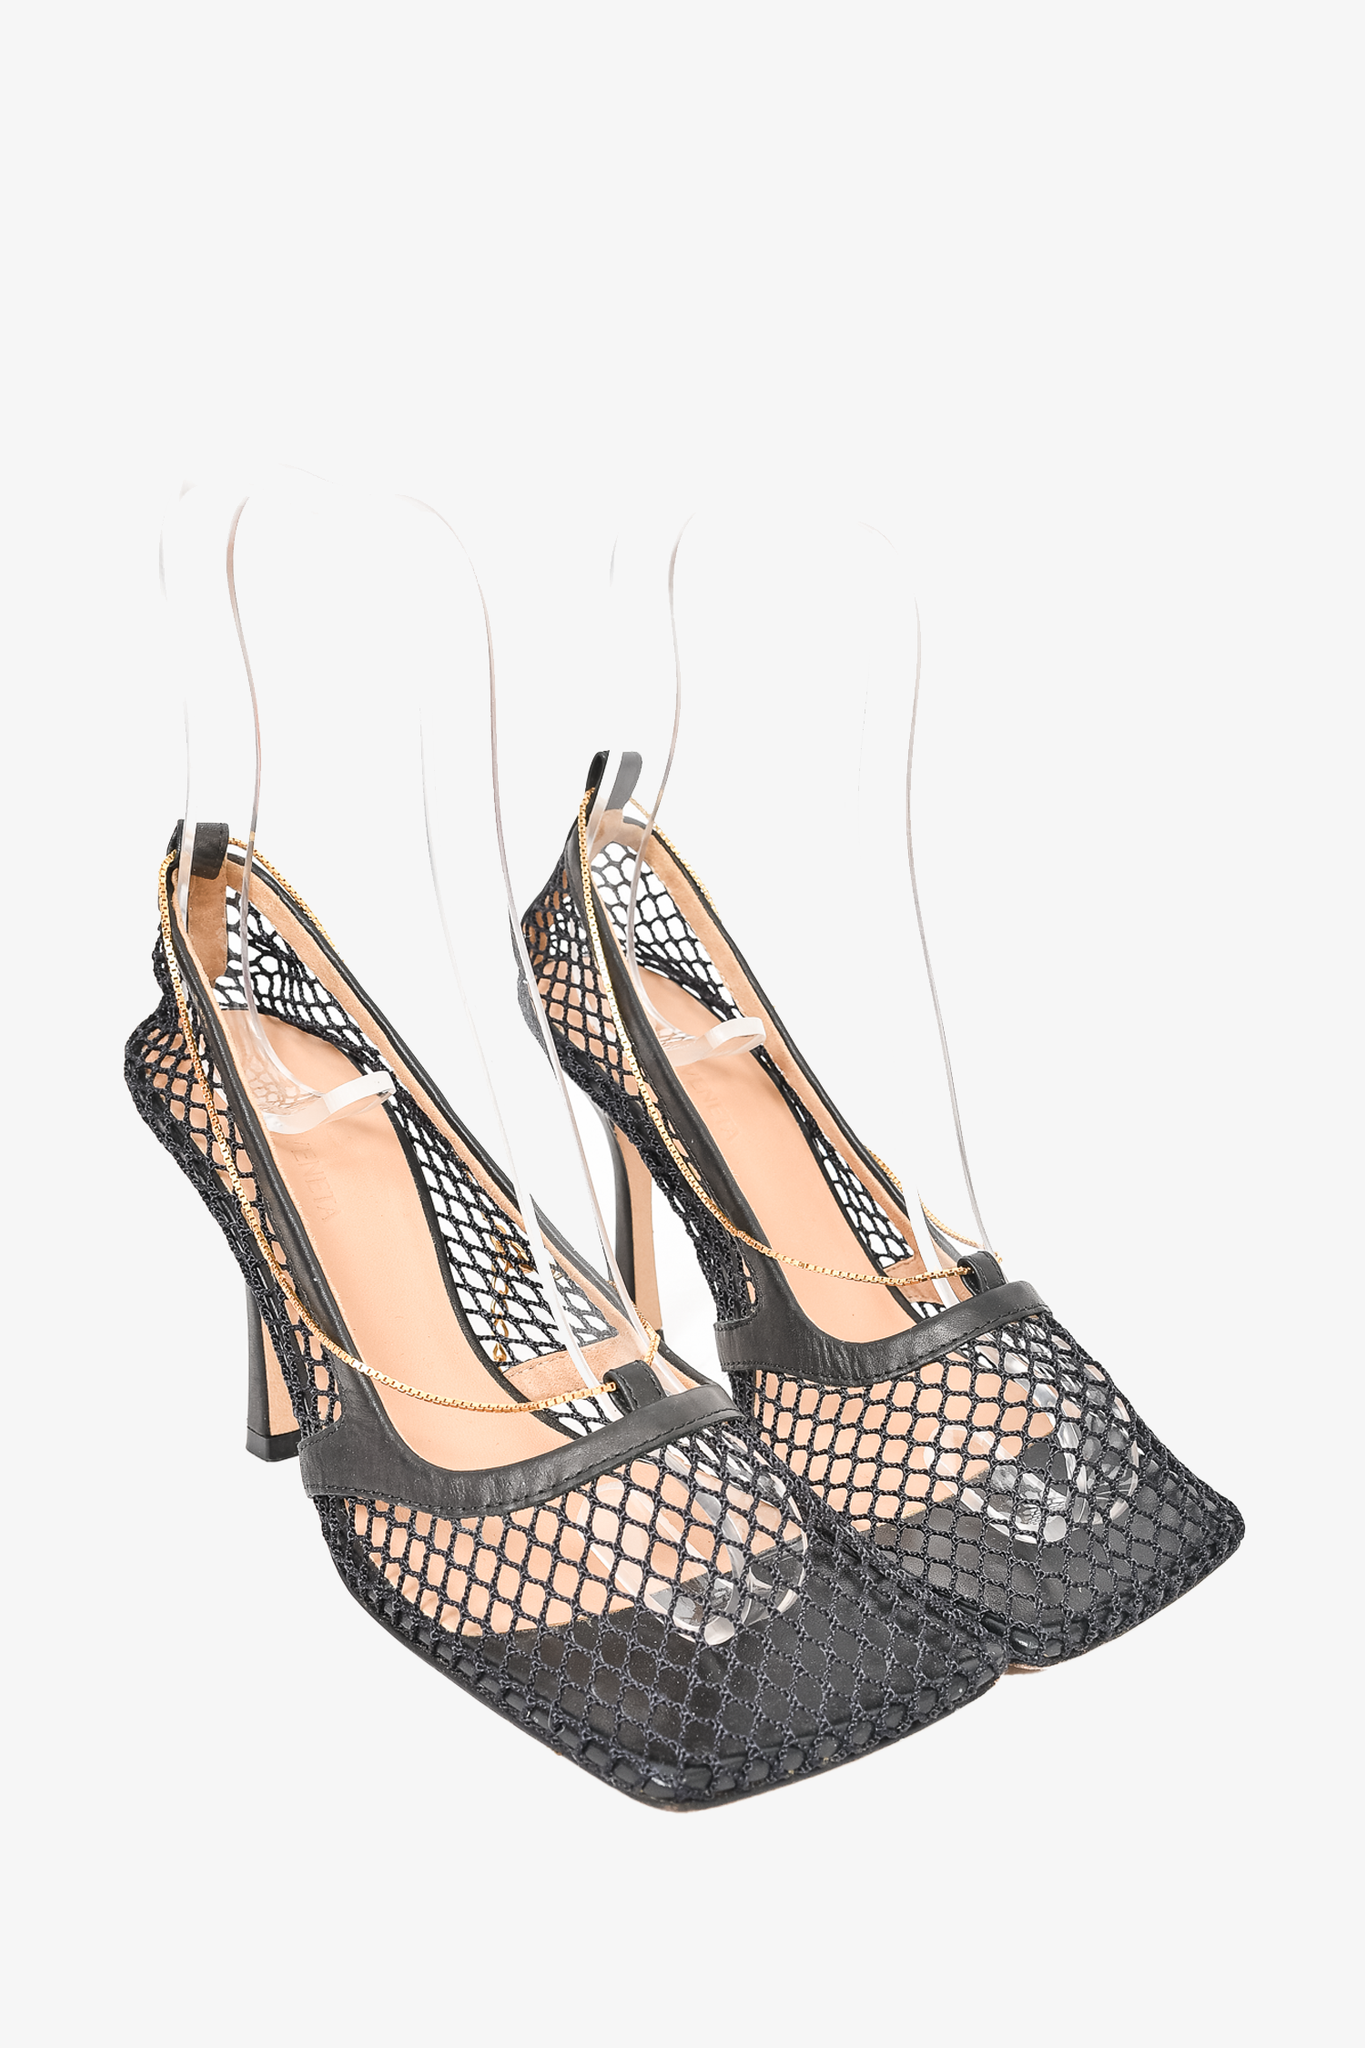 Bottega Veneta Black Net 'Stretch' Strappy Heels Size 36.5